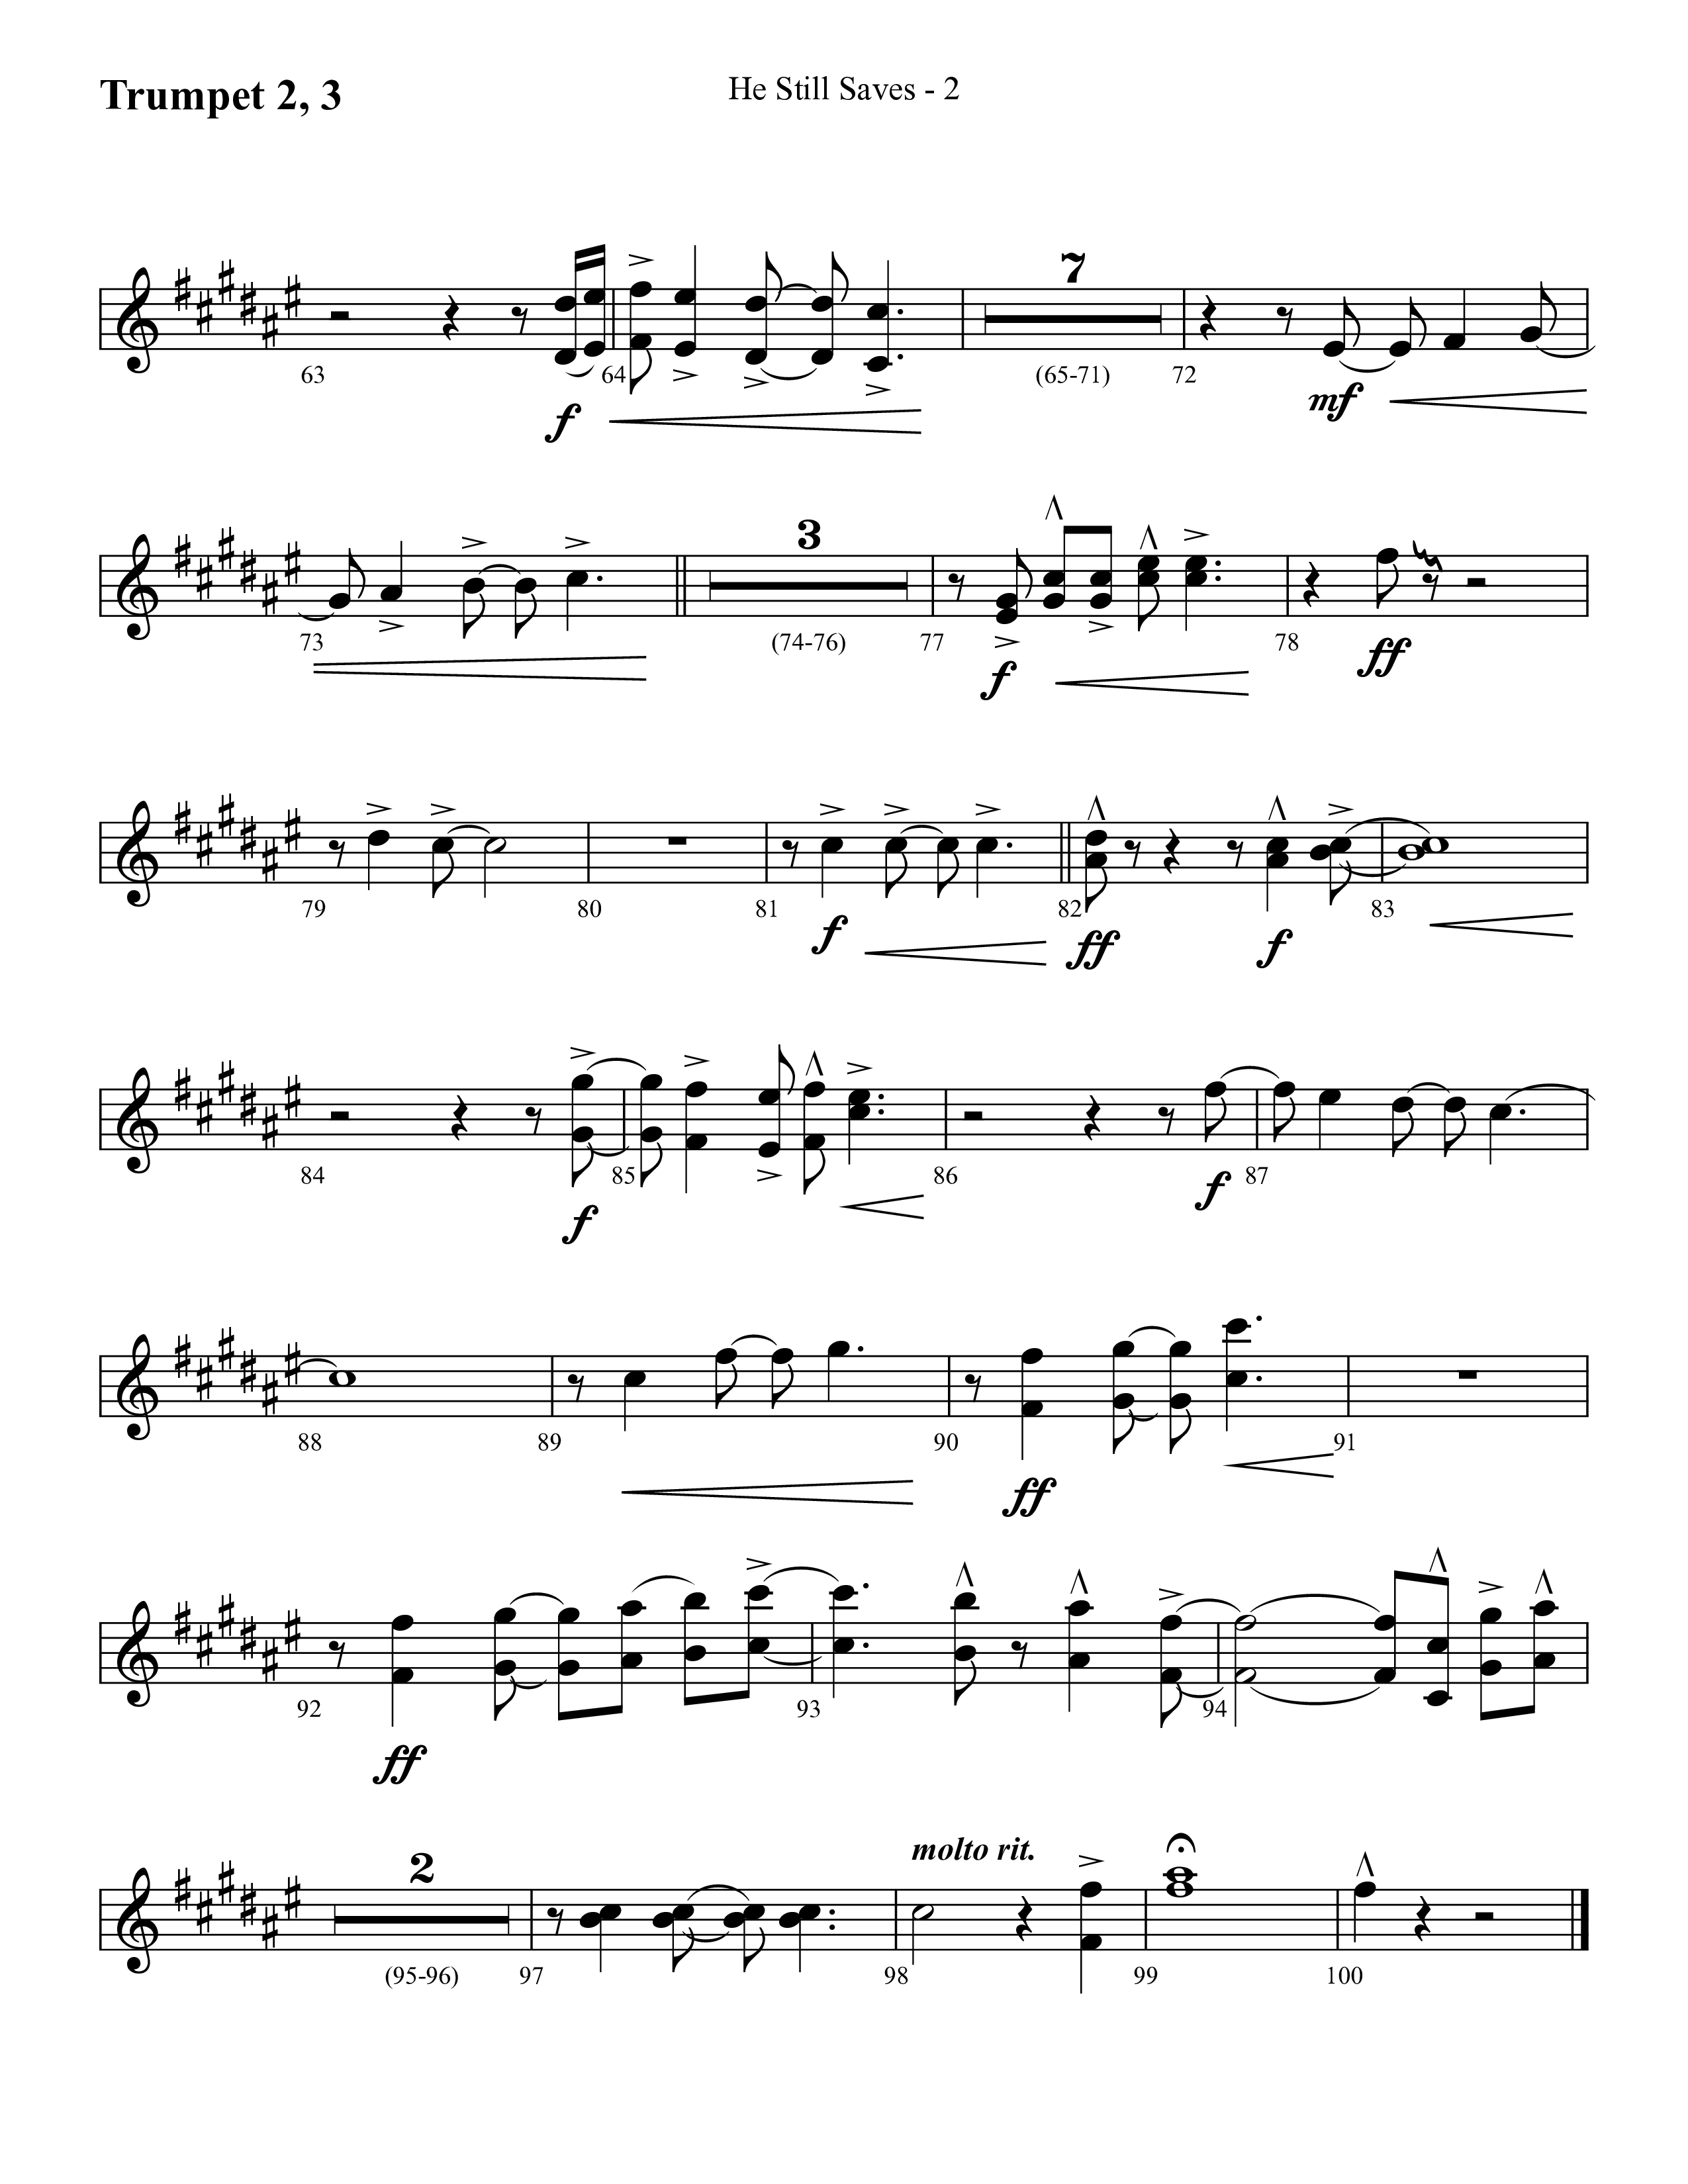 He Still Saves (with Jesus Saves) (Choral Anthem SATB) Trumpet 2/3 (Lifeway Choral / Arr. Cliff Duren)